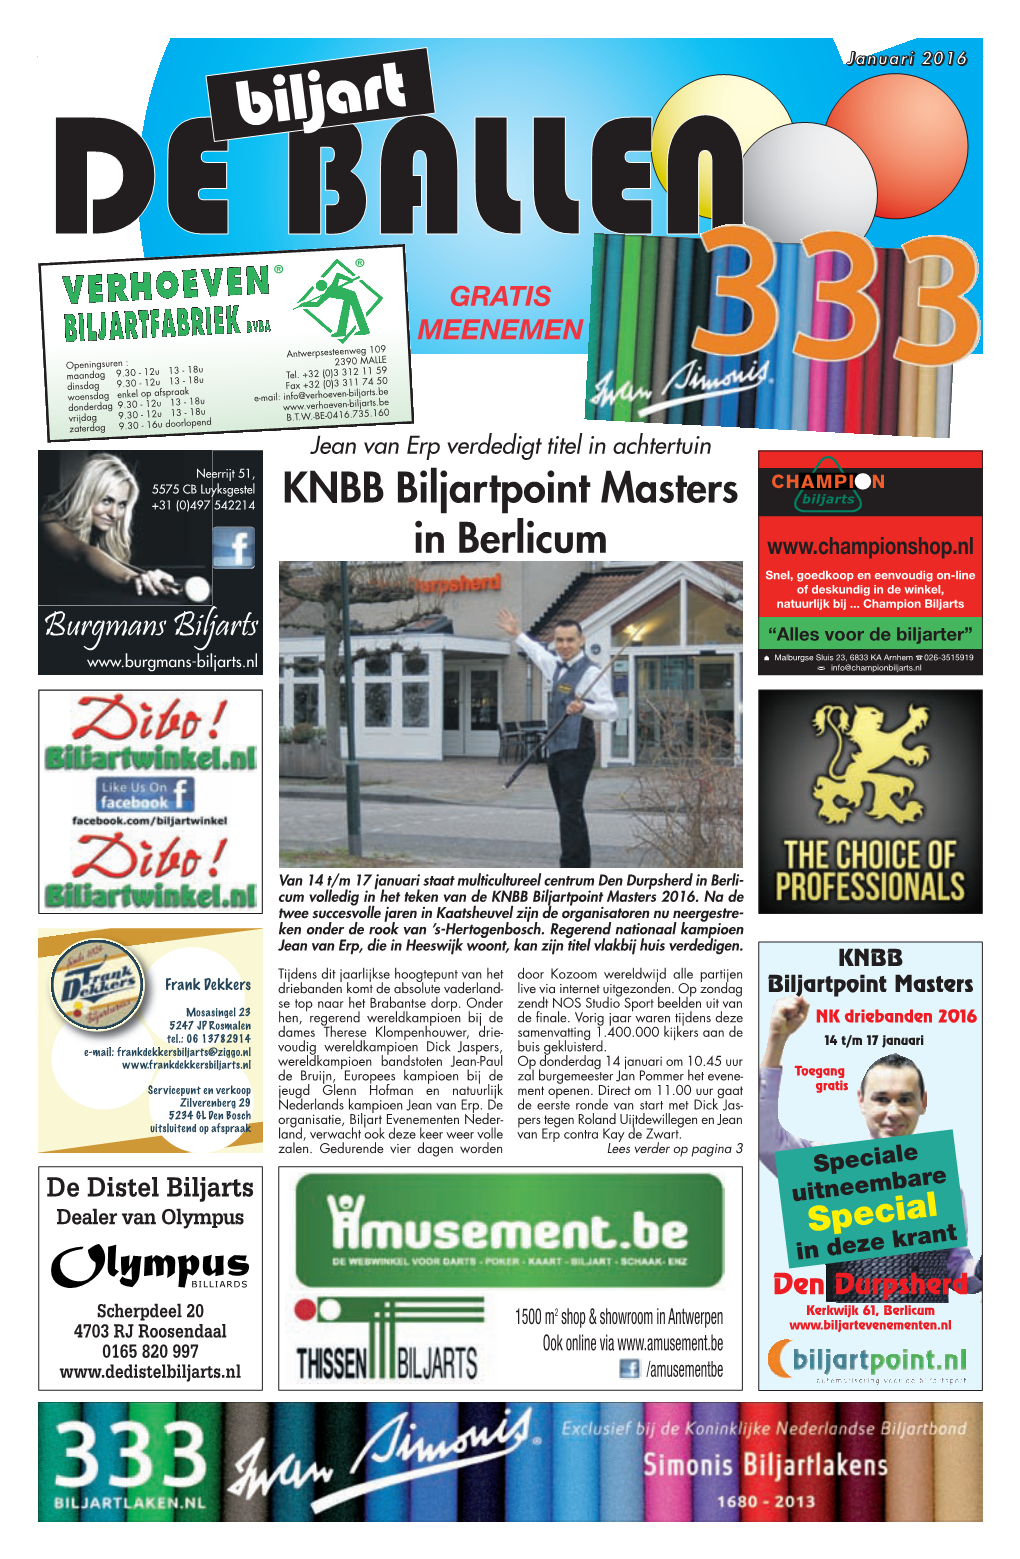 KNBB Biljartpoint Masters in Berlicum Snel, Goedkoop En Eenvoudig On-Line of Deskundig in De Winkel, Natuurlijk Bij